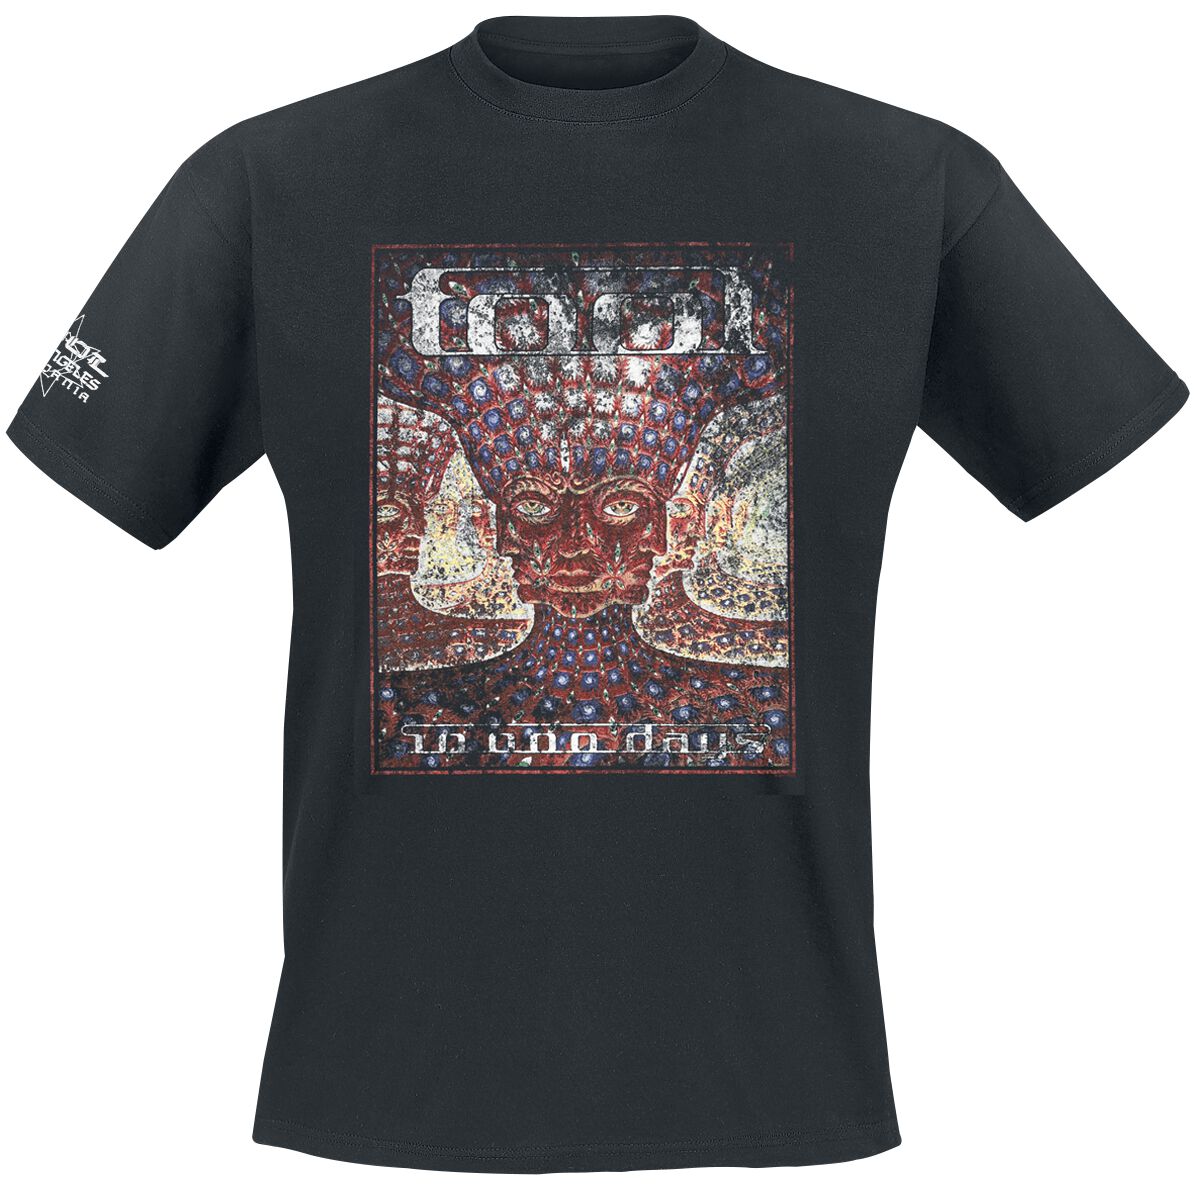 Tool T-Shirt - 10,000 days - S bis XXL - für Männer - Größe L - schwarz  - Lizenziertes Merchandise!